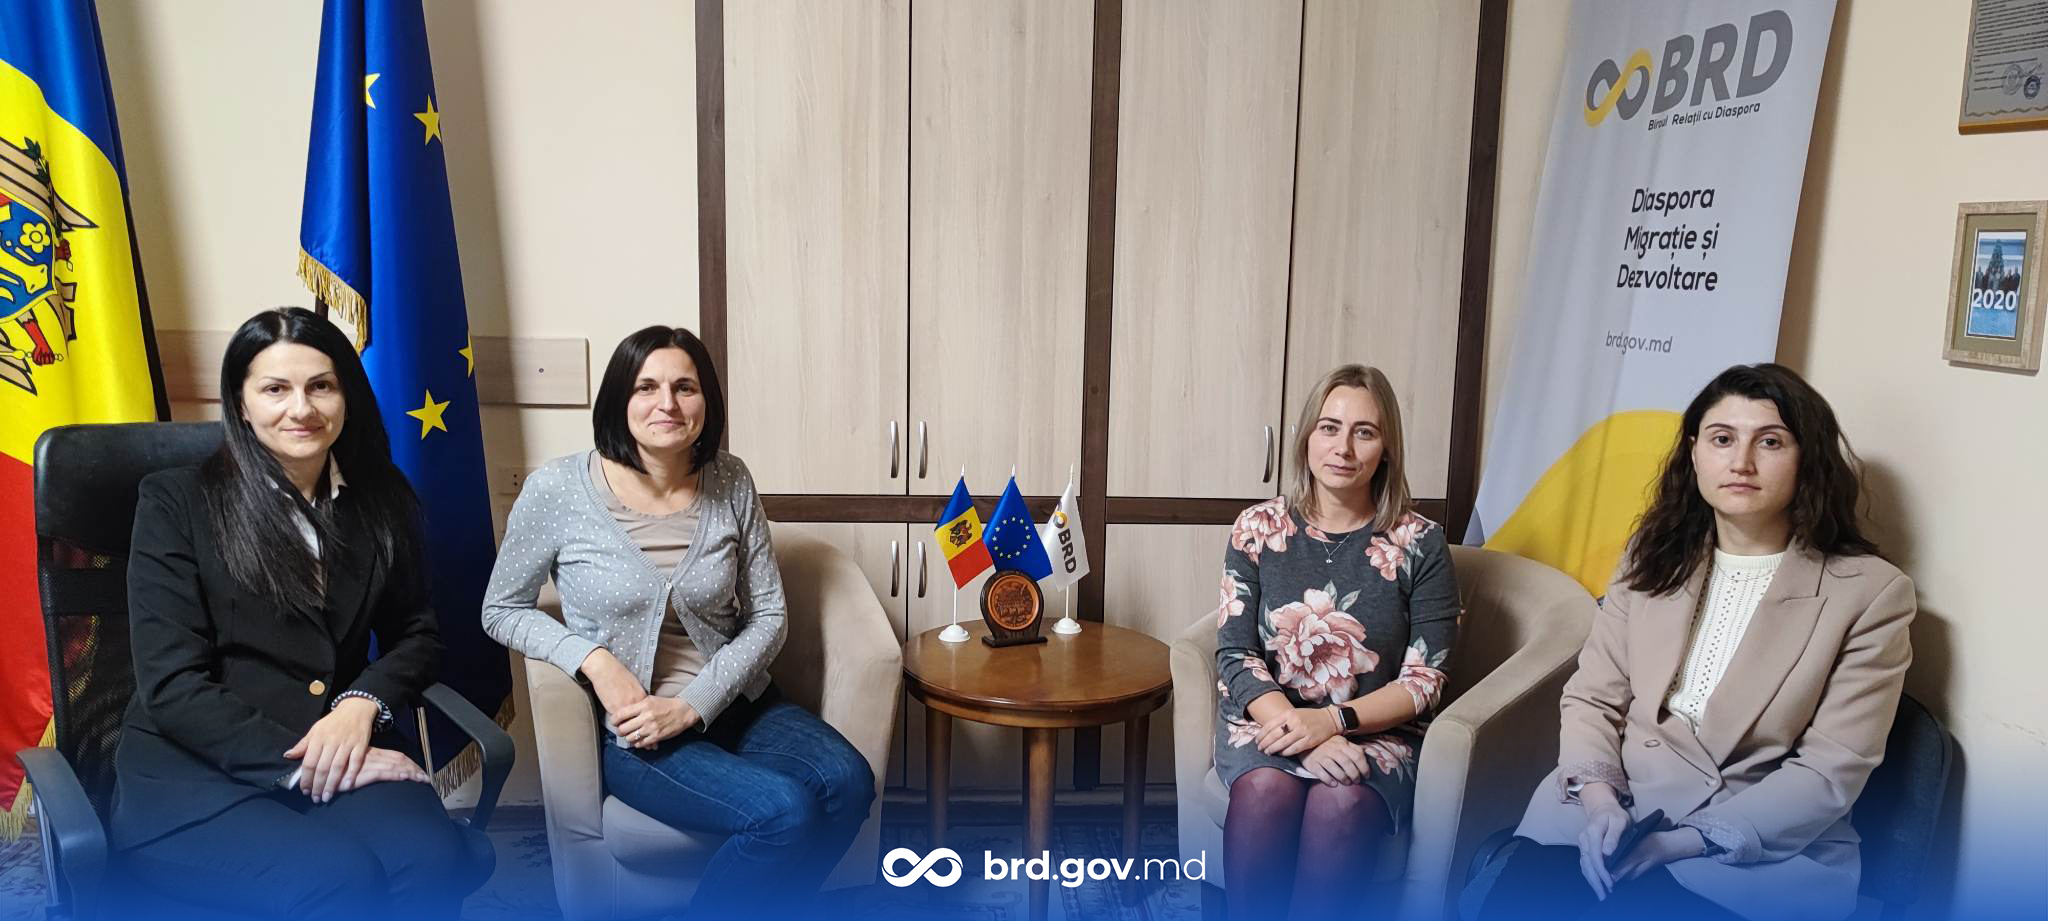 Aдриана Ротару из Бельгии и Дорина Балтаг из Королевства Нидерландов совершили визит в Республику Молдова